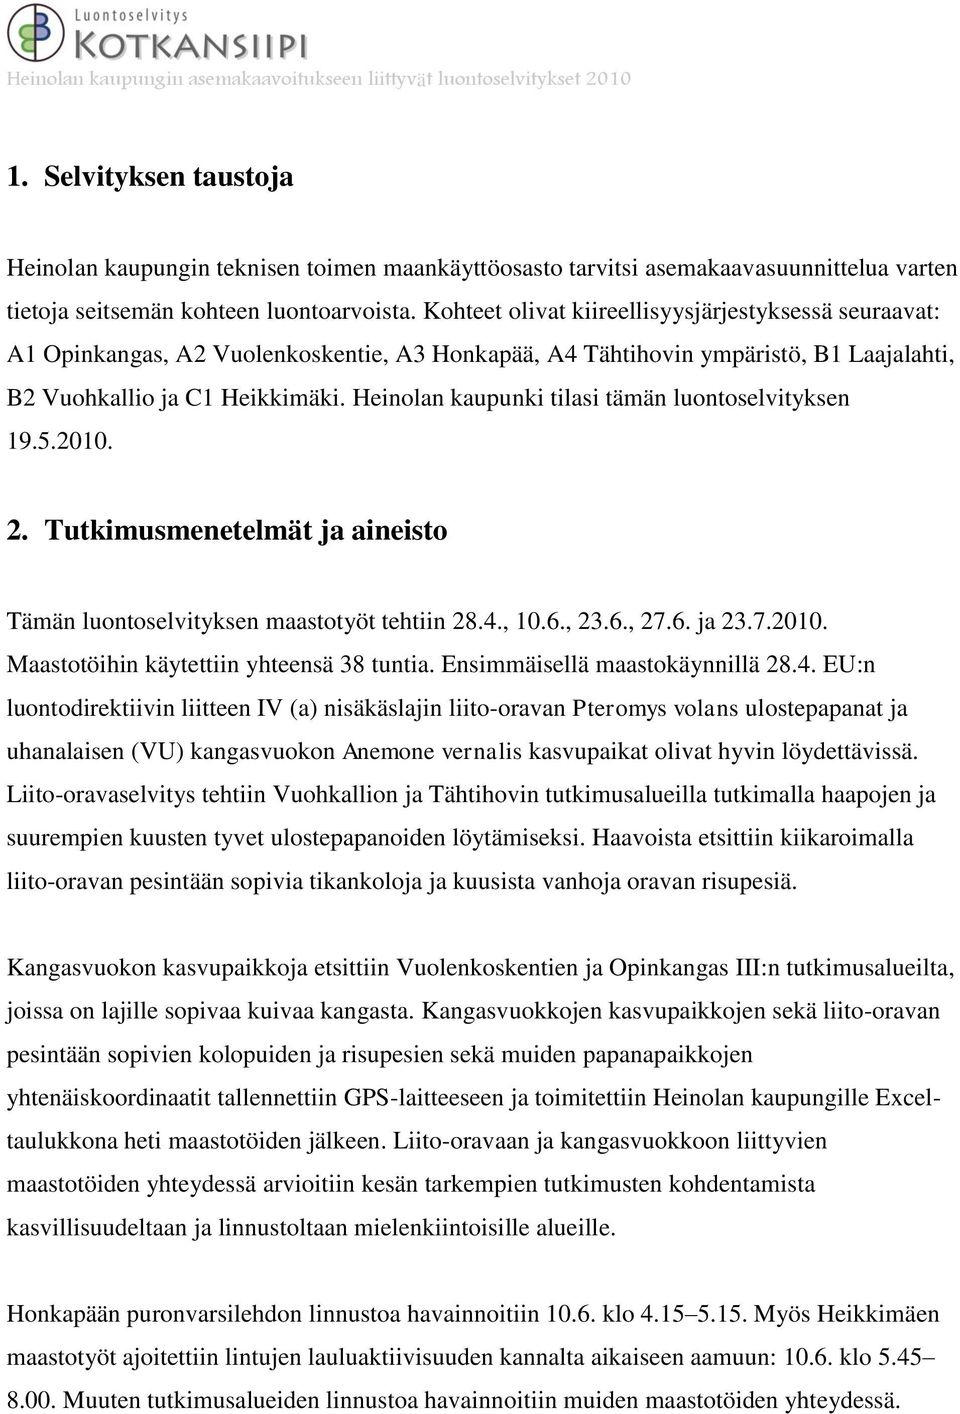 Heinolan kaupunki tilasi tämän luontoselvityksen 19.5.2010. 2. Tutkimusmenetelmät ja aineisto Tämän luontoselvityksen maastotyöt tehtiin 28.4., 10.6., 23.6., 27.6. ja 23.7.2010. Maastotöihin käytettiin yhteensä 38 tuntia.